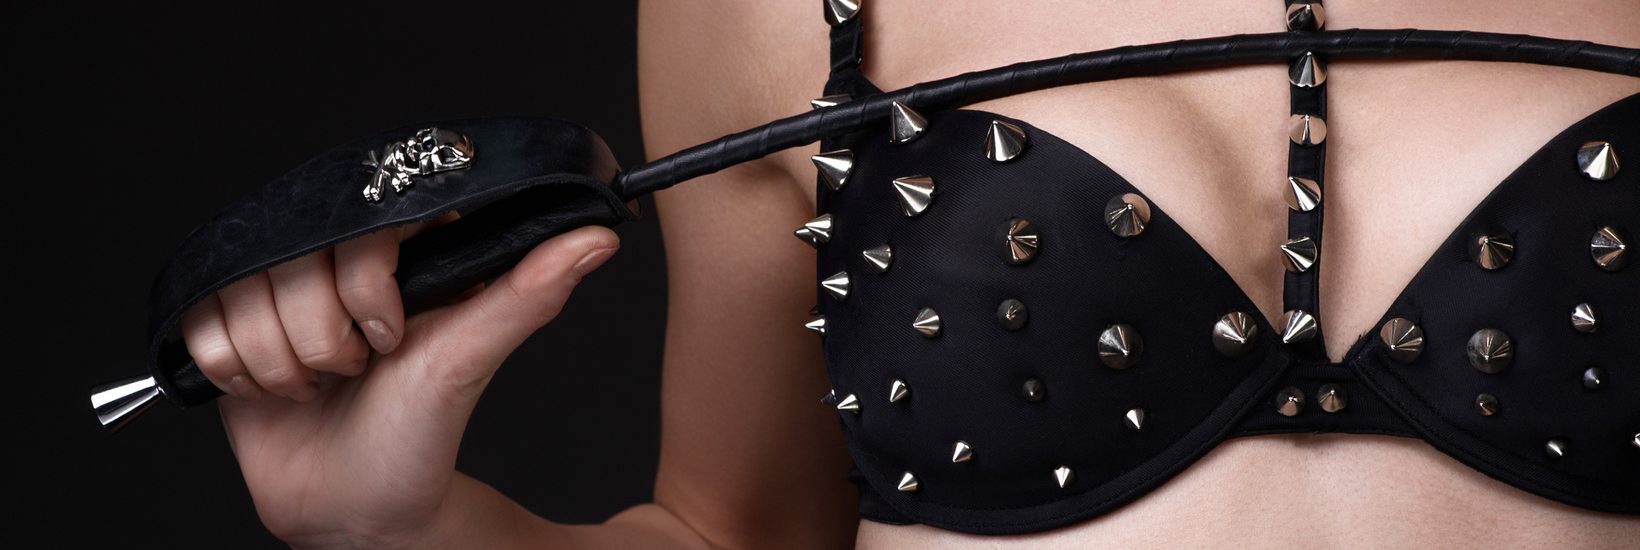 BDSM Frau in schwarzen Dessous mit Nieten und Peitsche